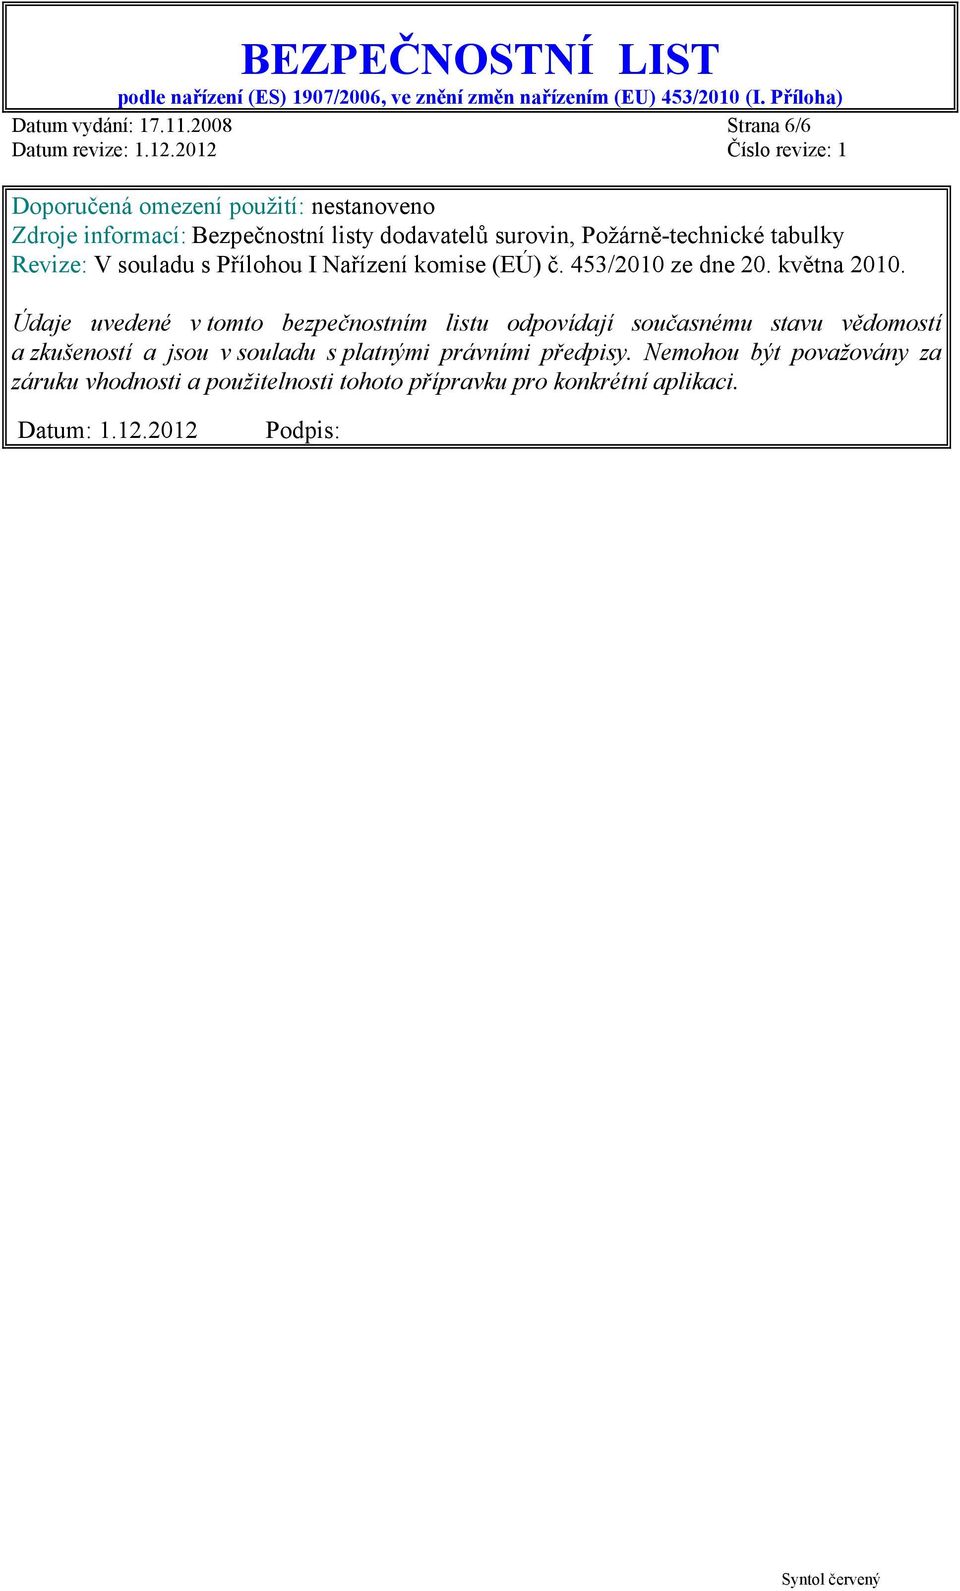 Požárně-technické tabulky Revize: V souladu s Přílohou I Nařízení komise (EÚ) č. 453/2010 ze dne 20. května 2010.